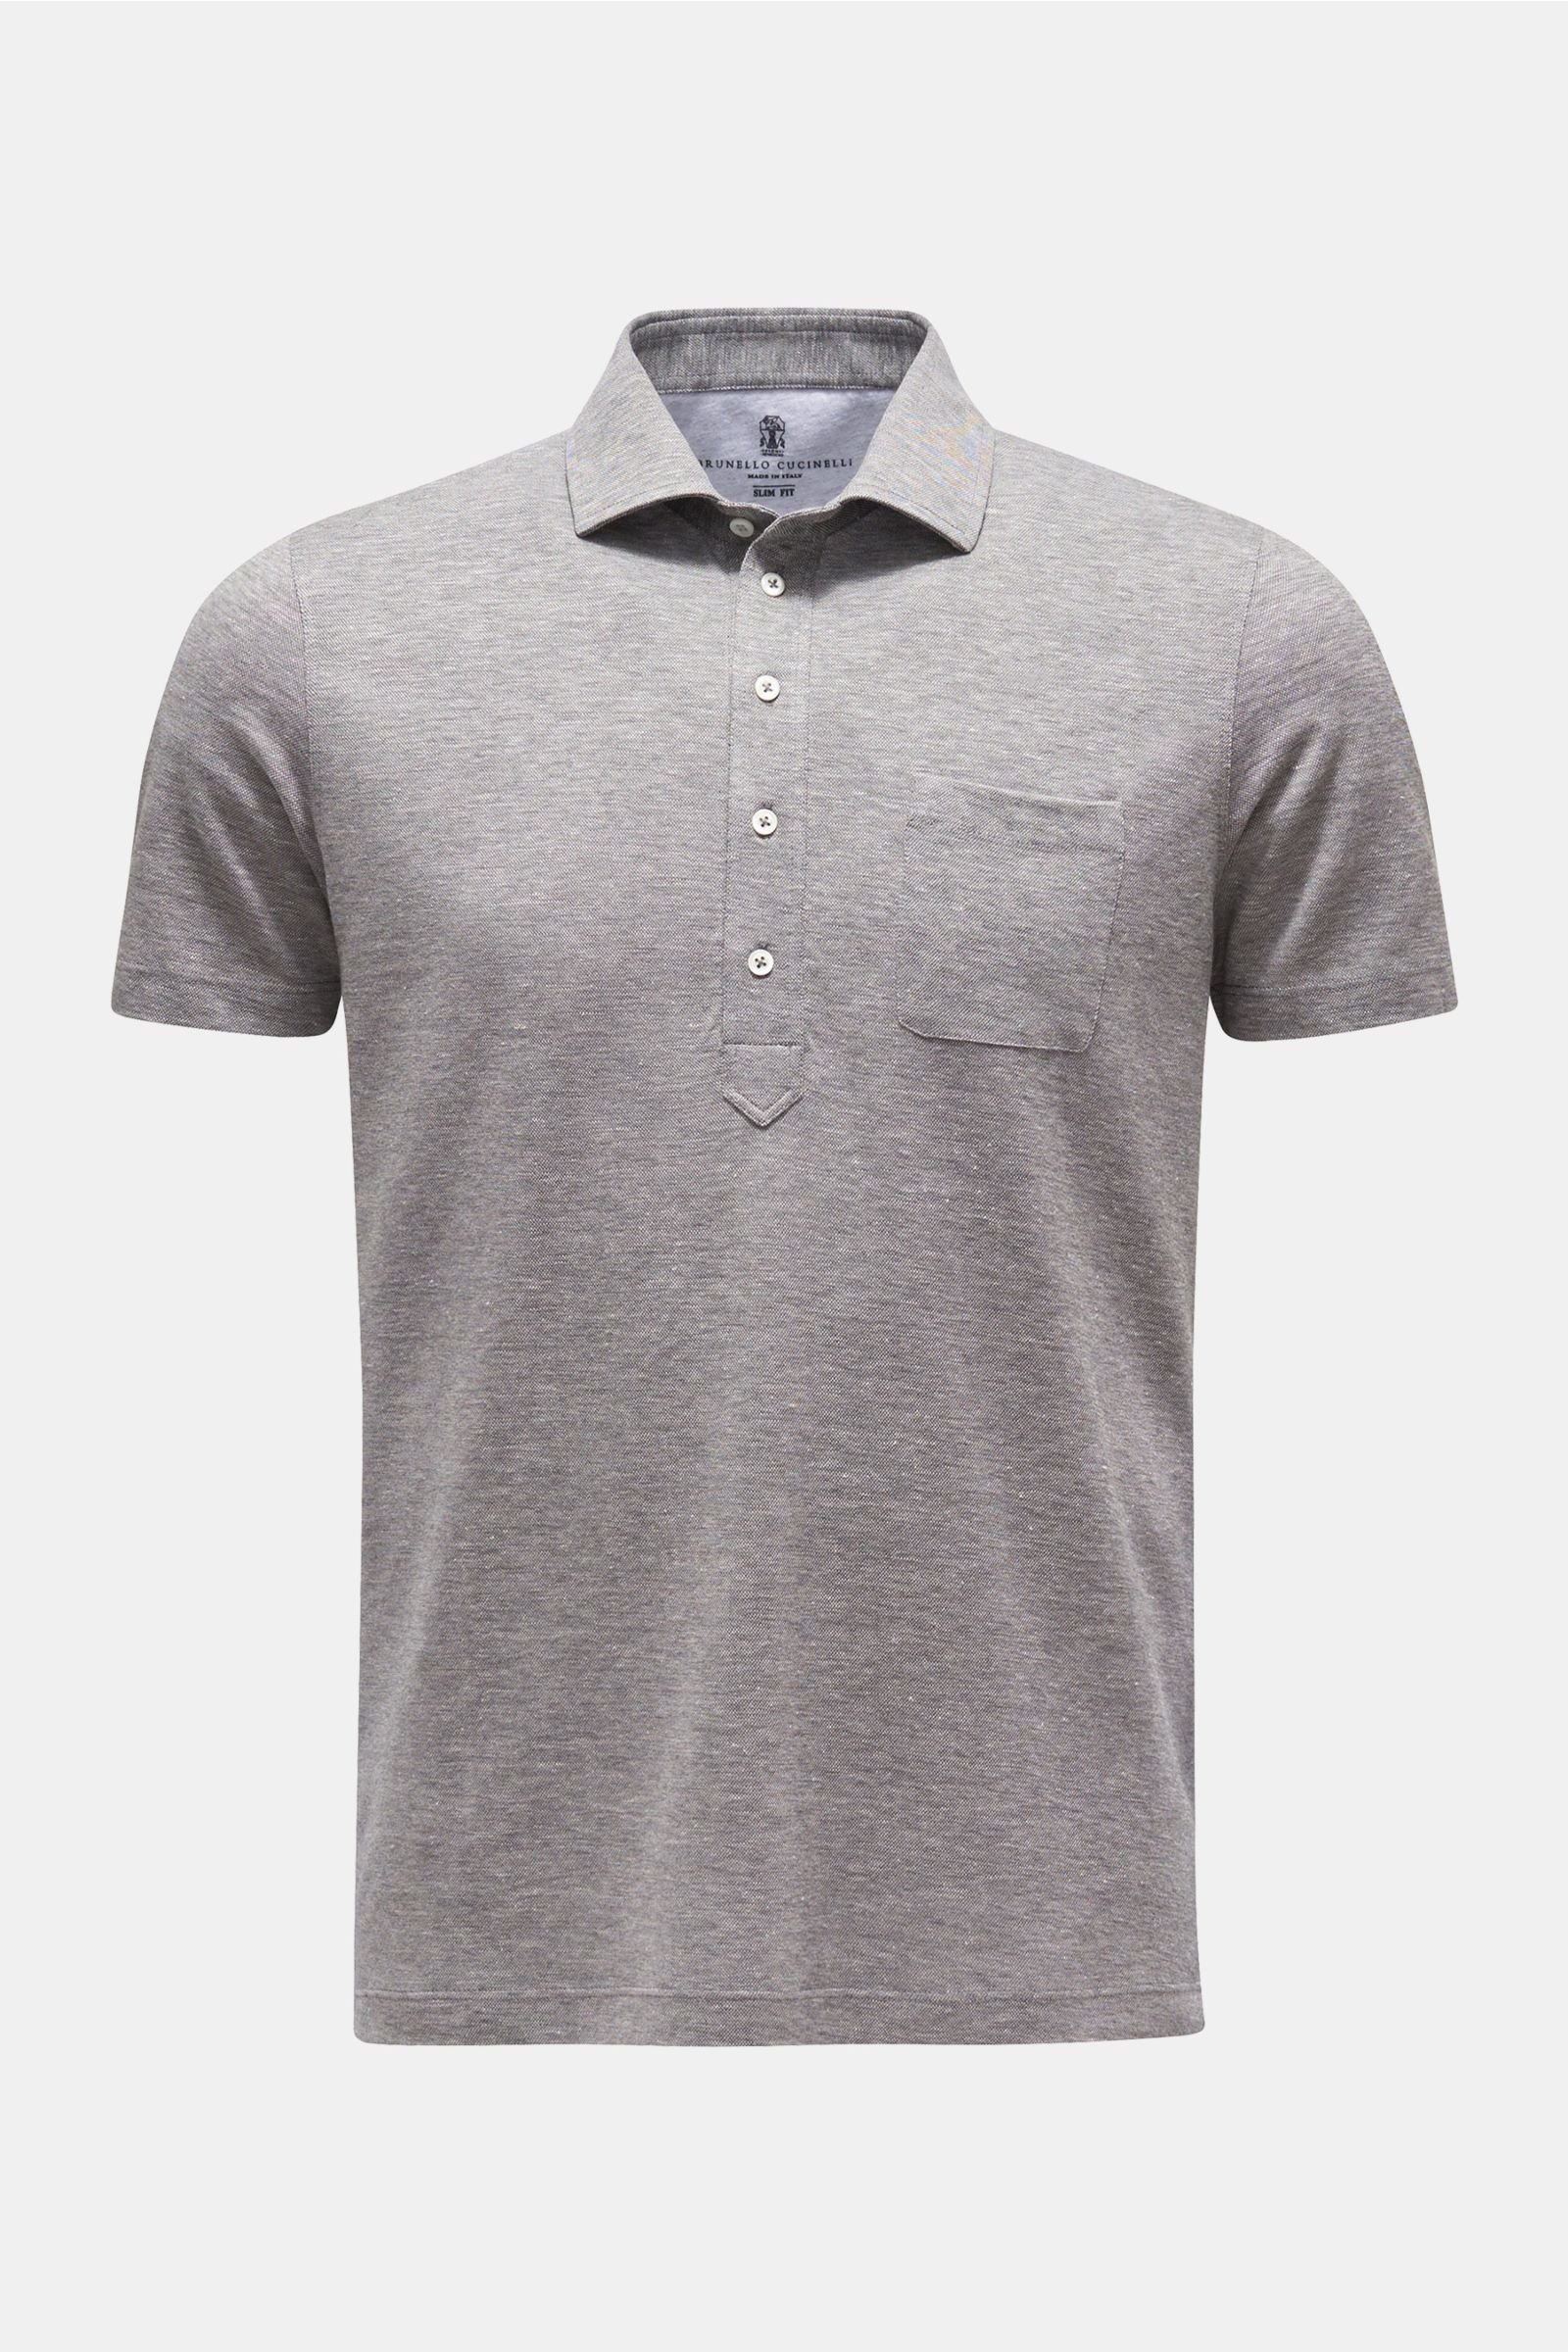 Polo shirt grey